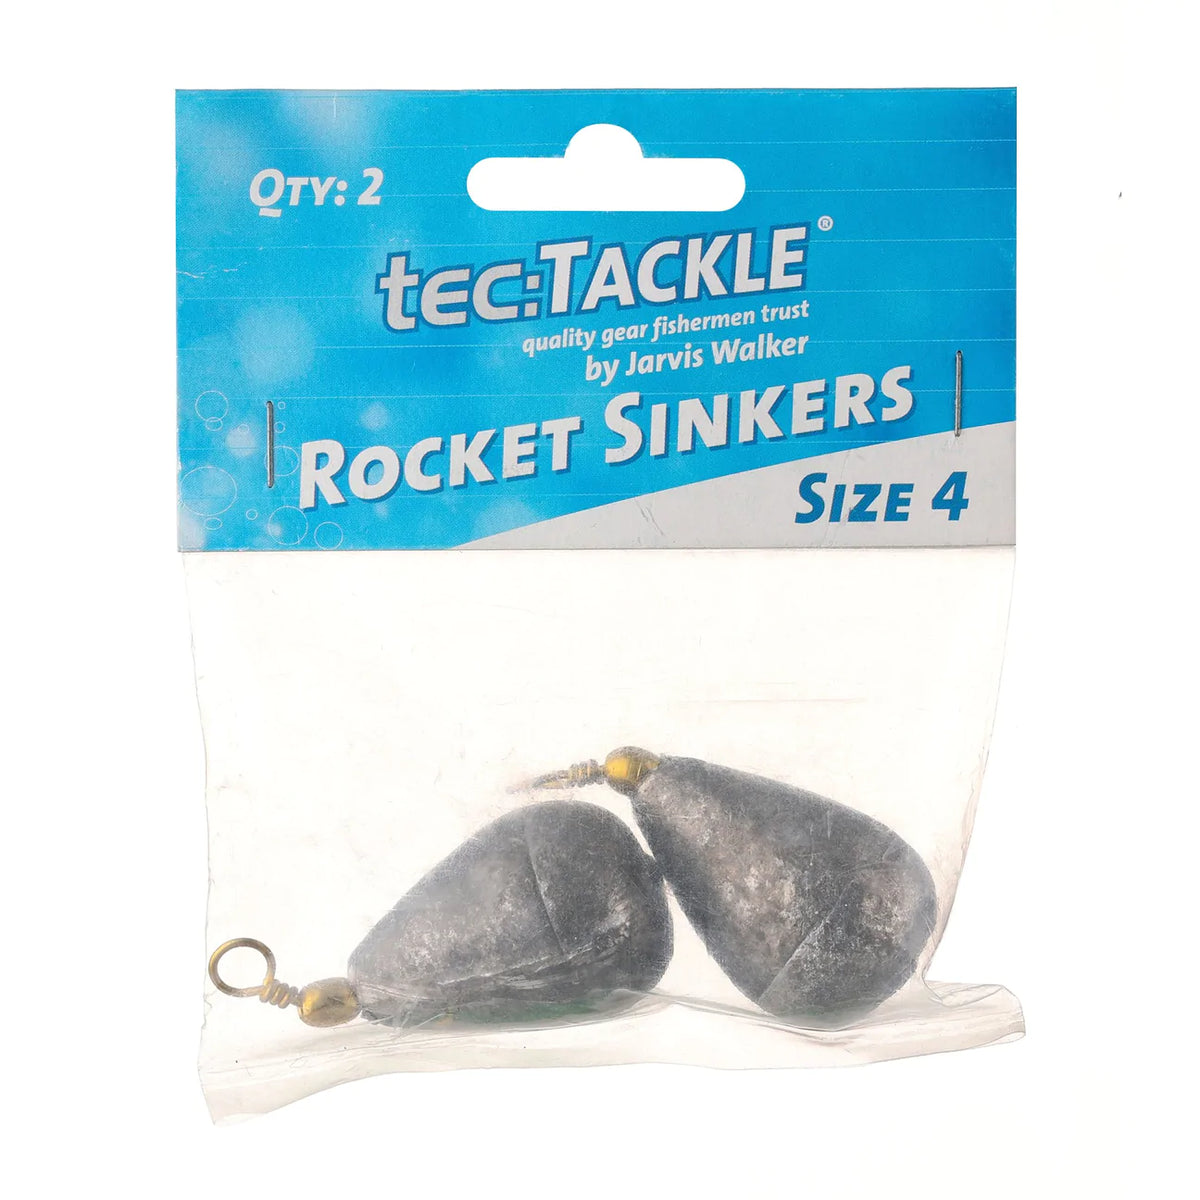 Tectackle Rocket Sinker – TackleWest